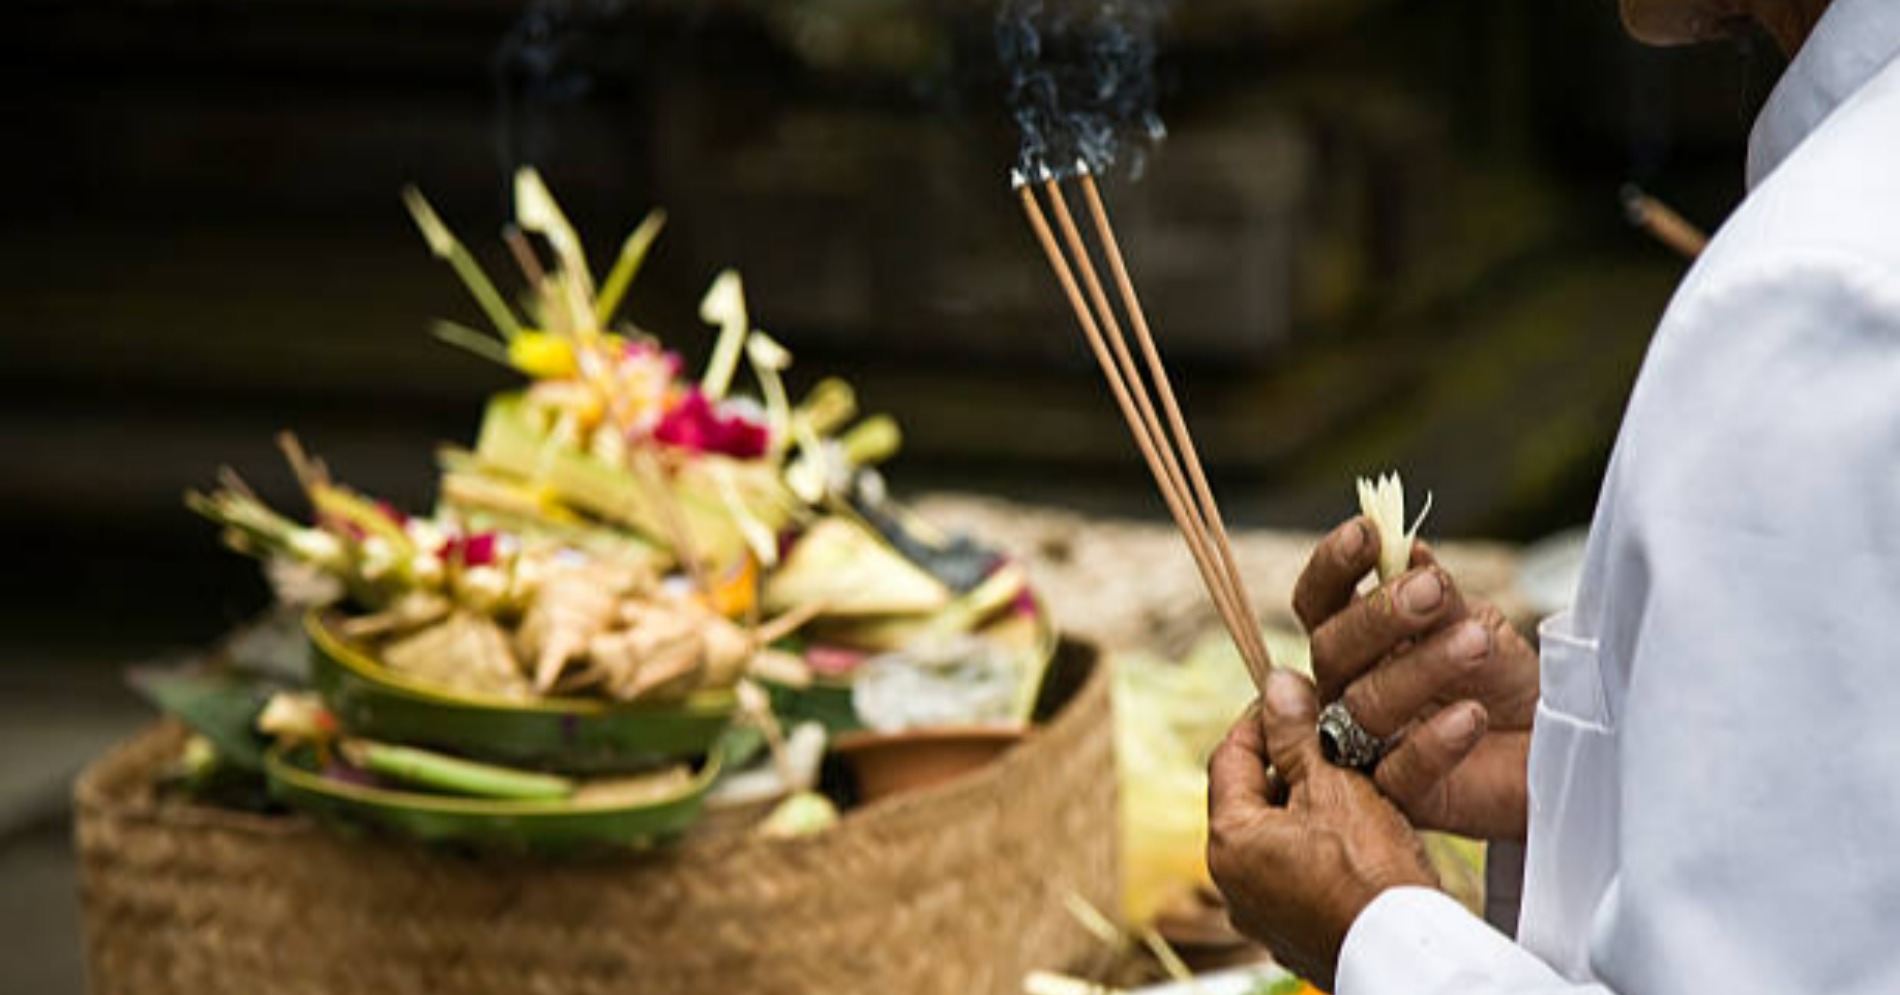 Ilustrasi upacara di Bali (seumber gambar Pexels)